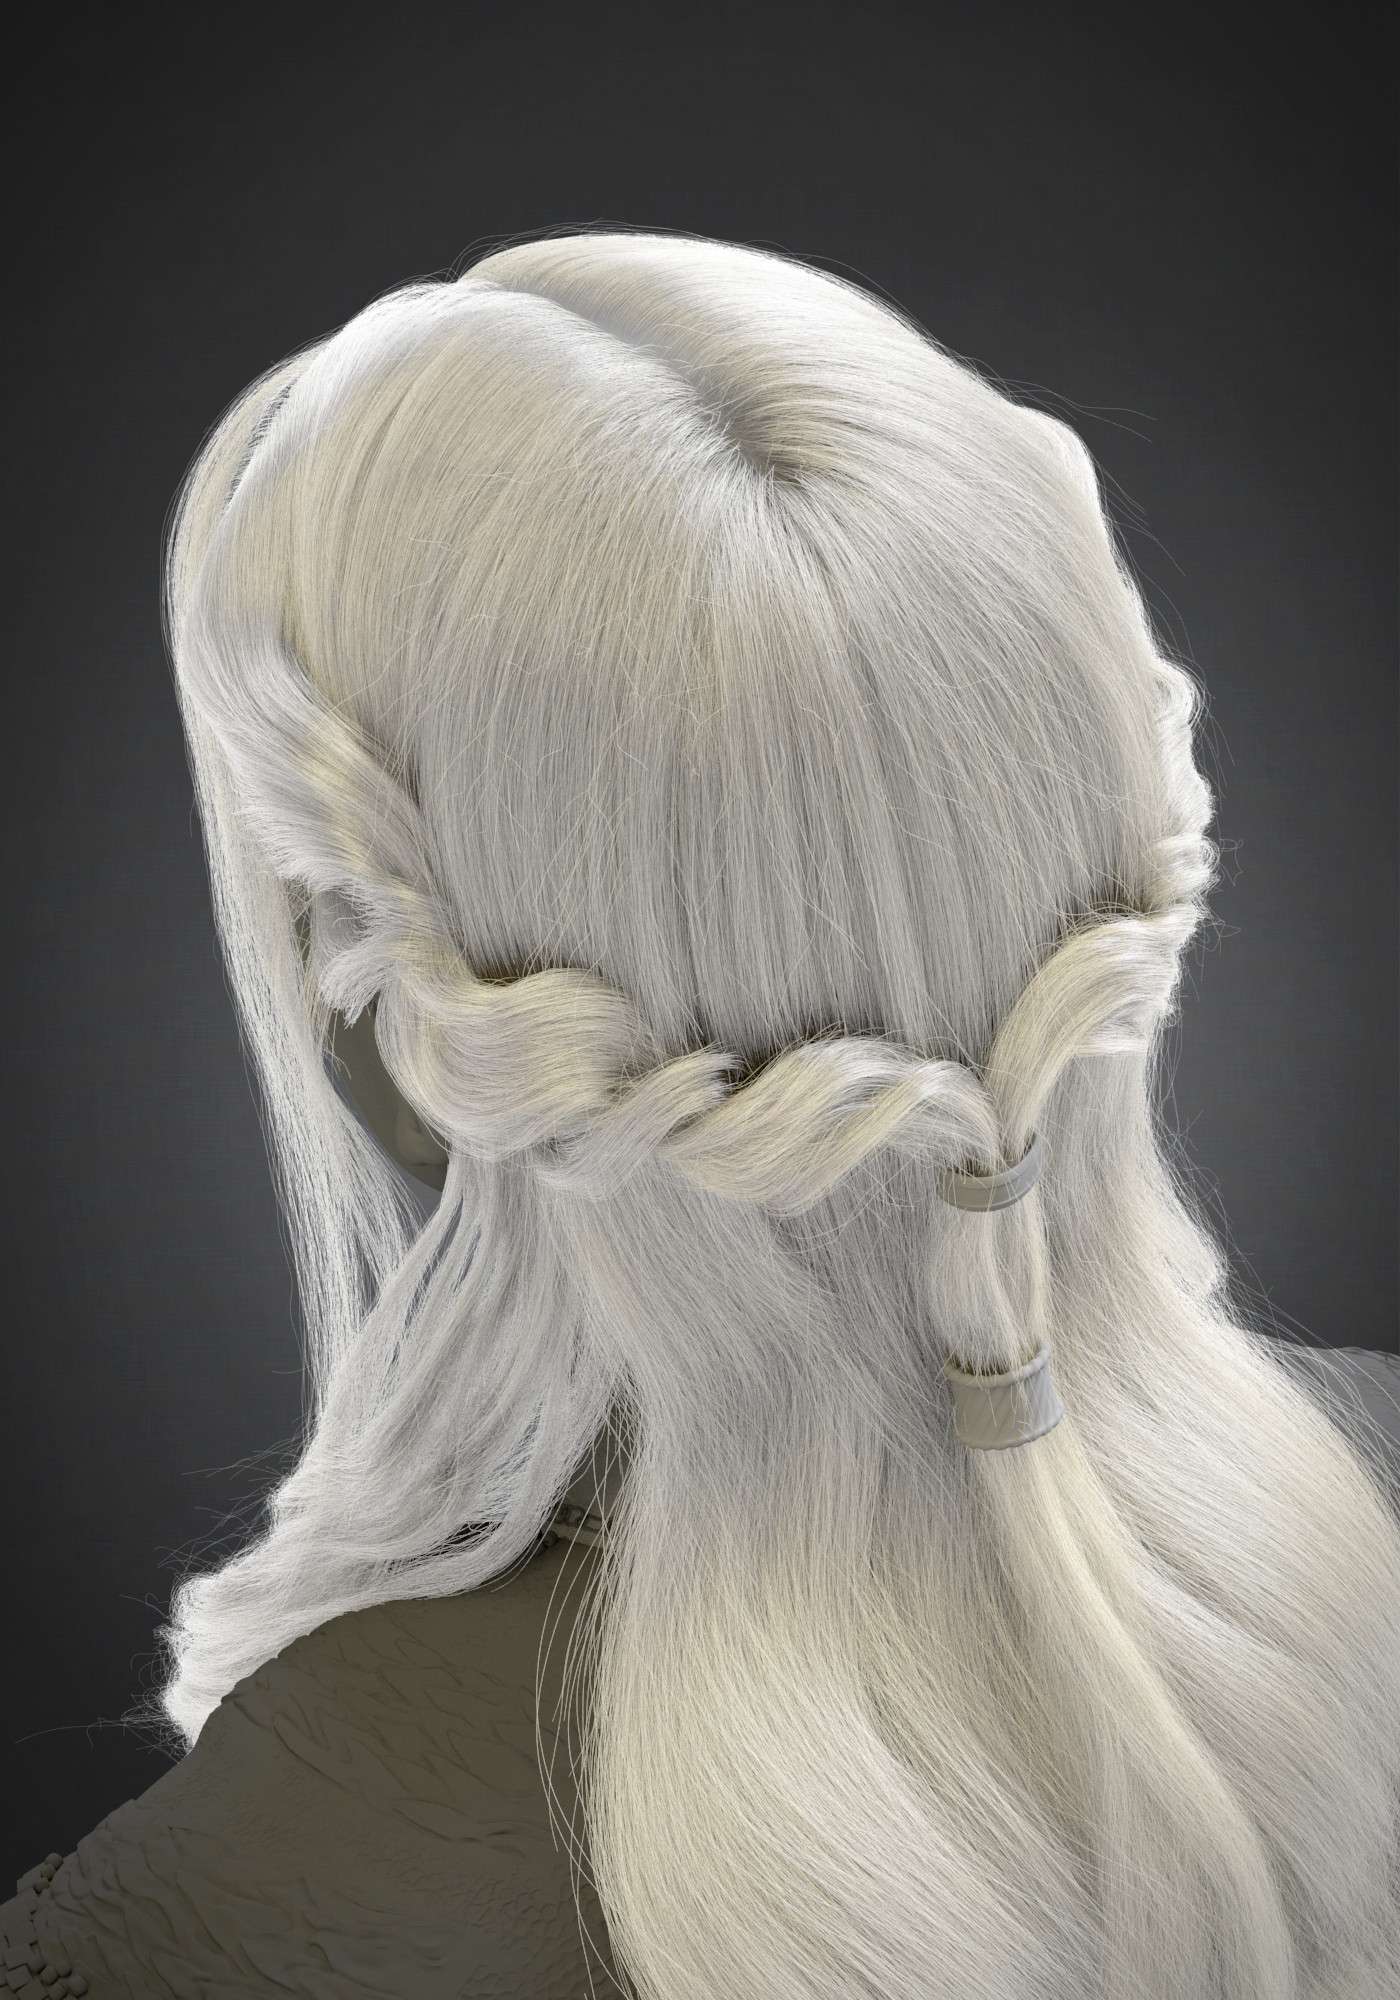 Making of Daenerys Targaryen by Daniel la Mura